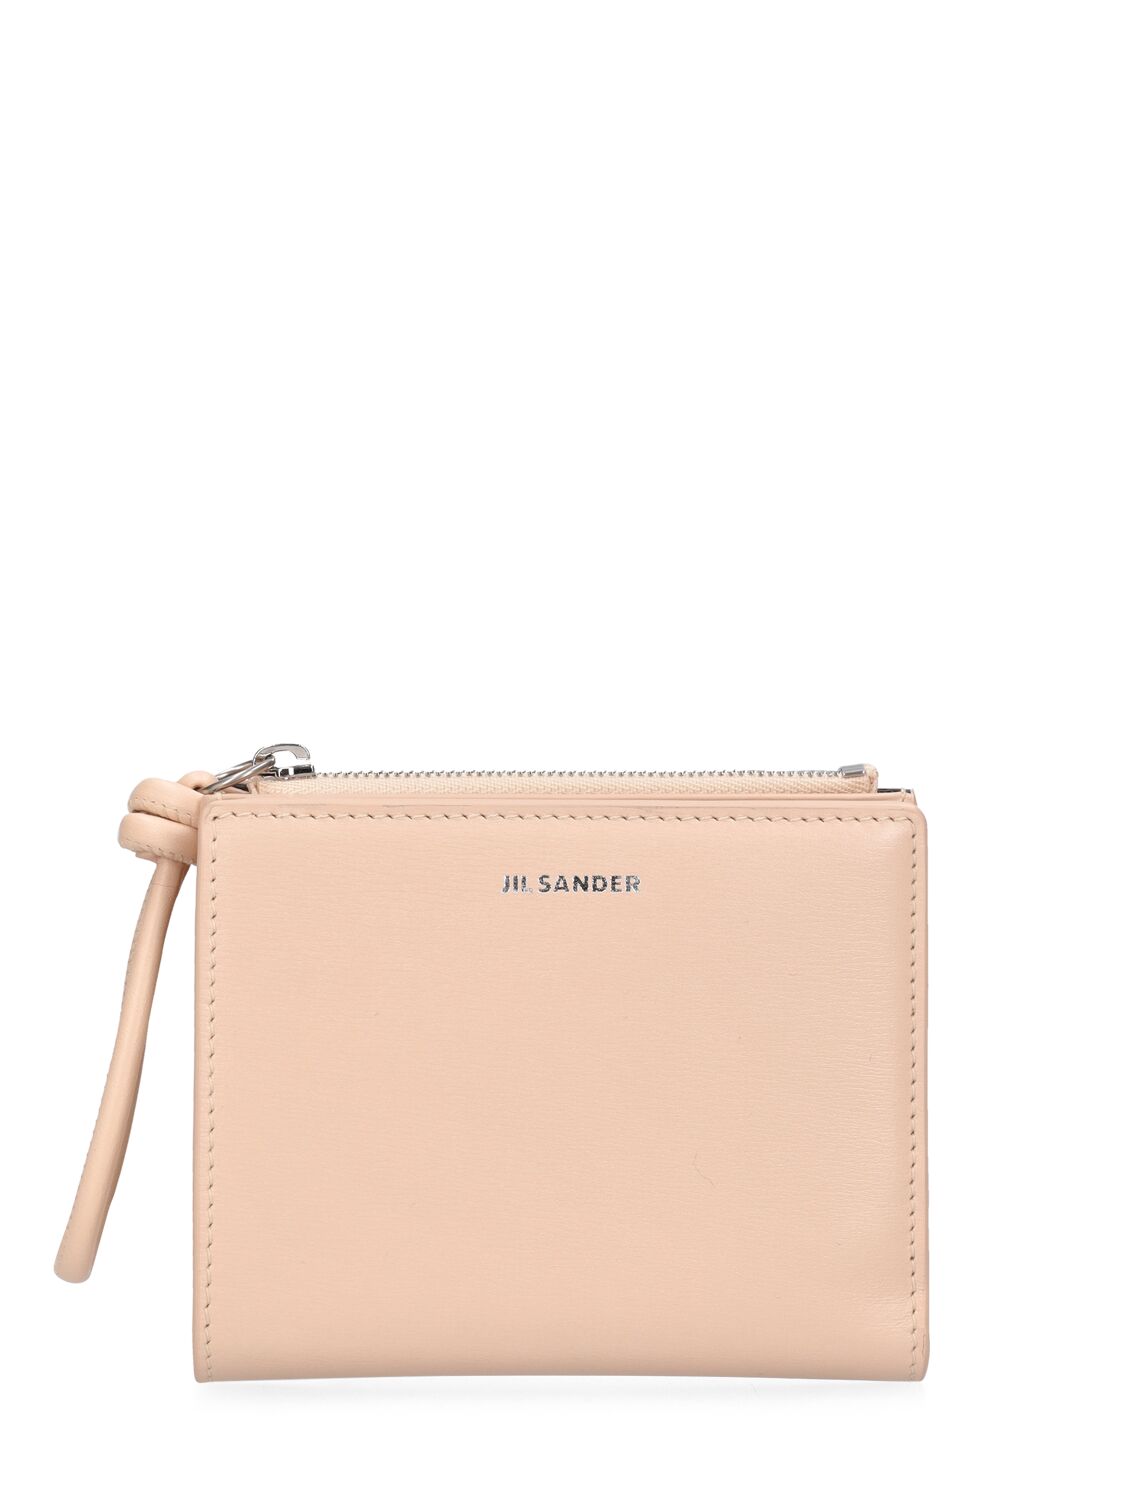 Jil Sander Mini Embossed Leather Wallet In Pink